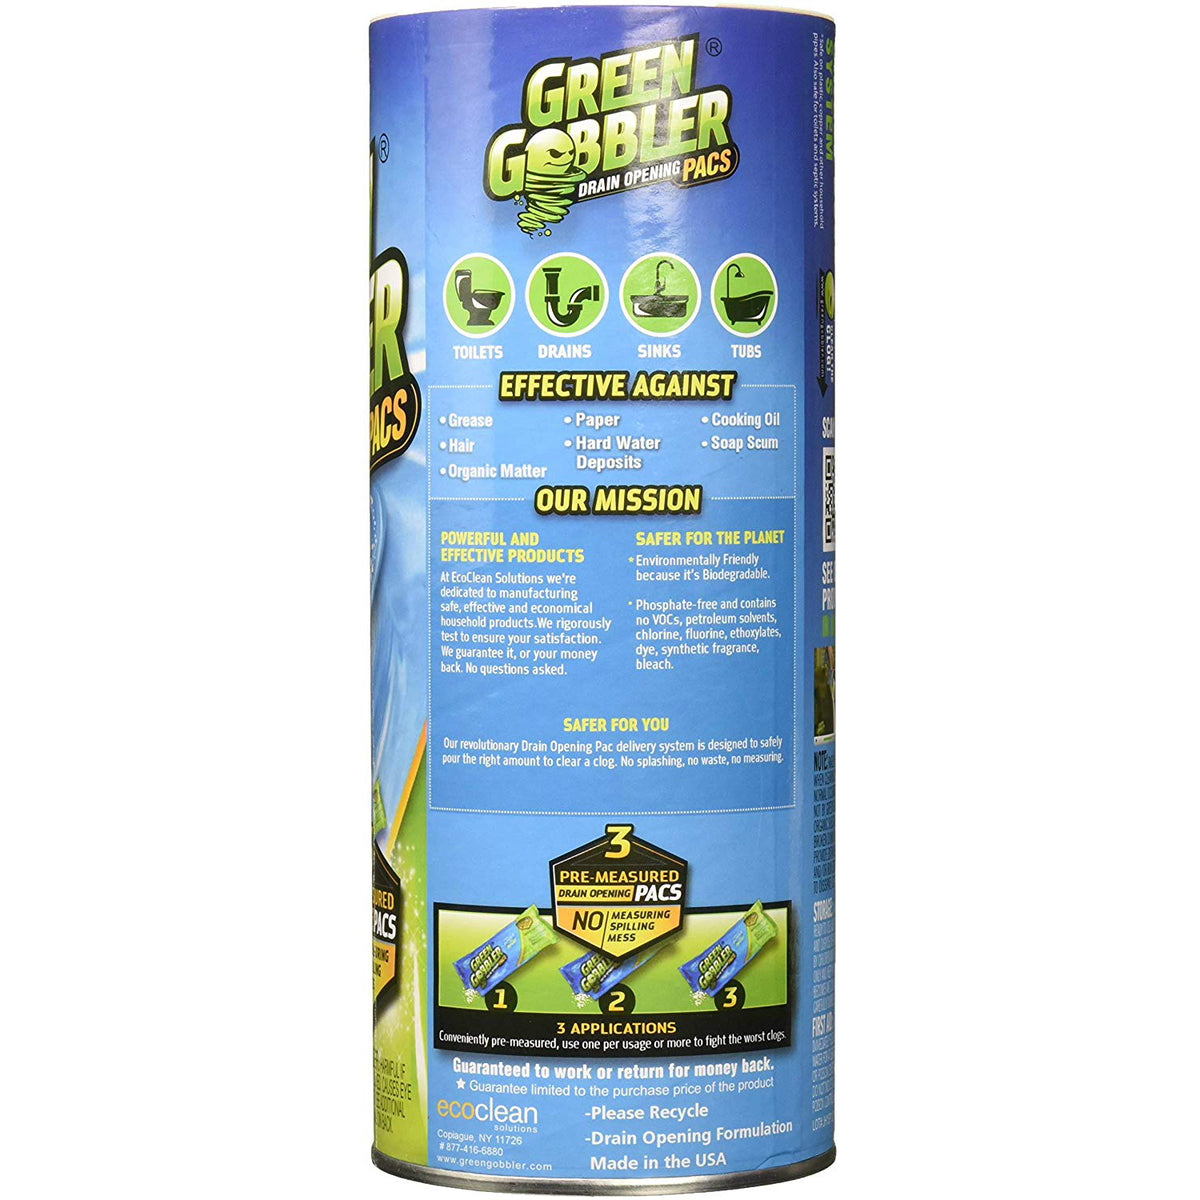 Green Gobbler Drain Opening Pacs - 3 pack, 6.53 oz packs